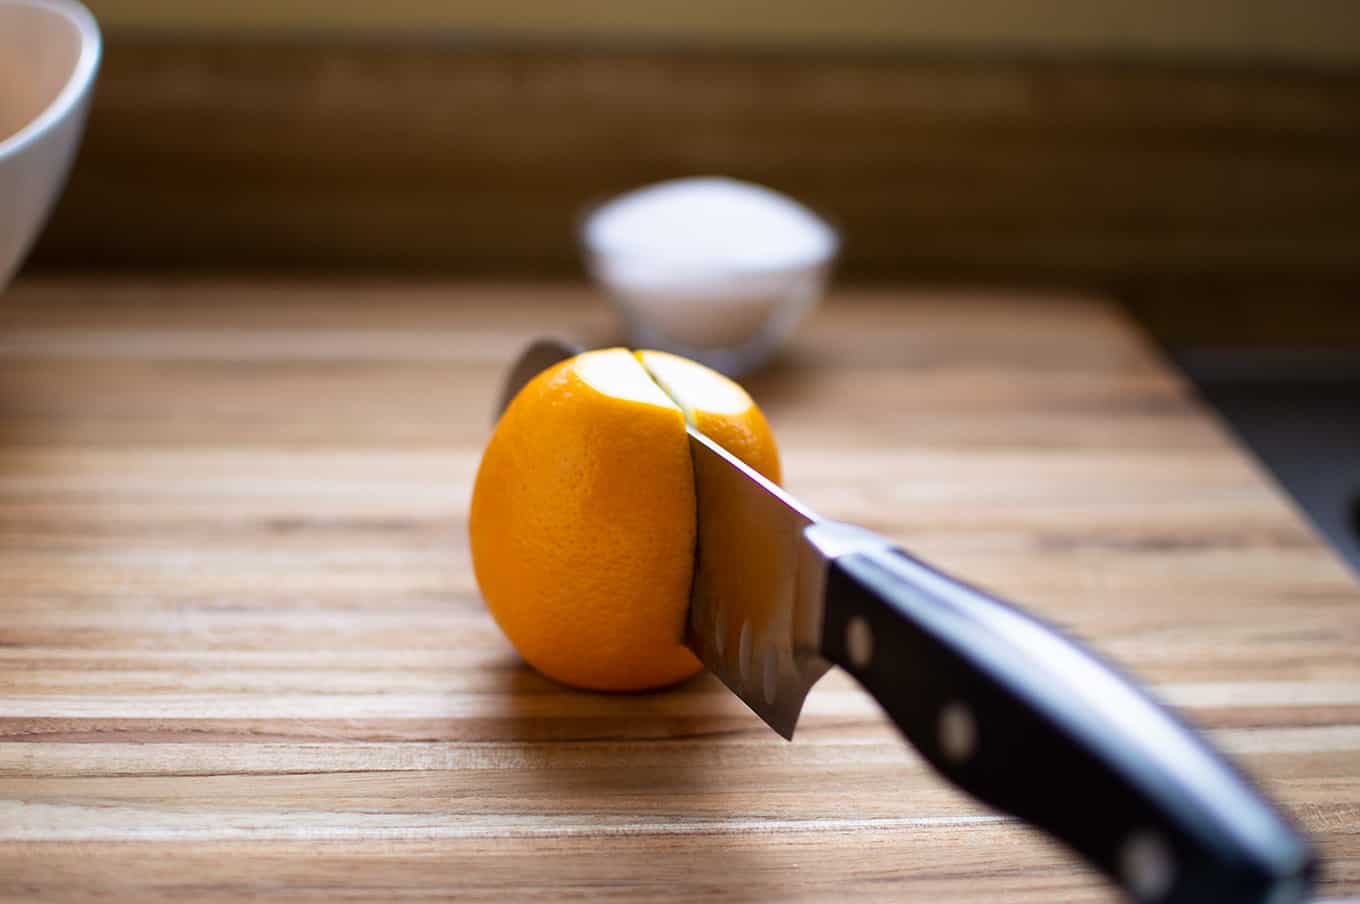 A knife cutting through a lemon.